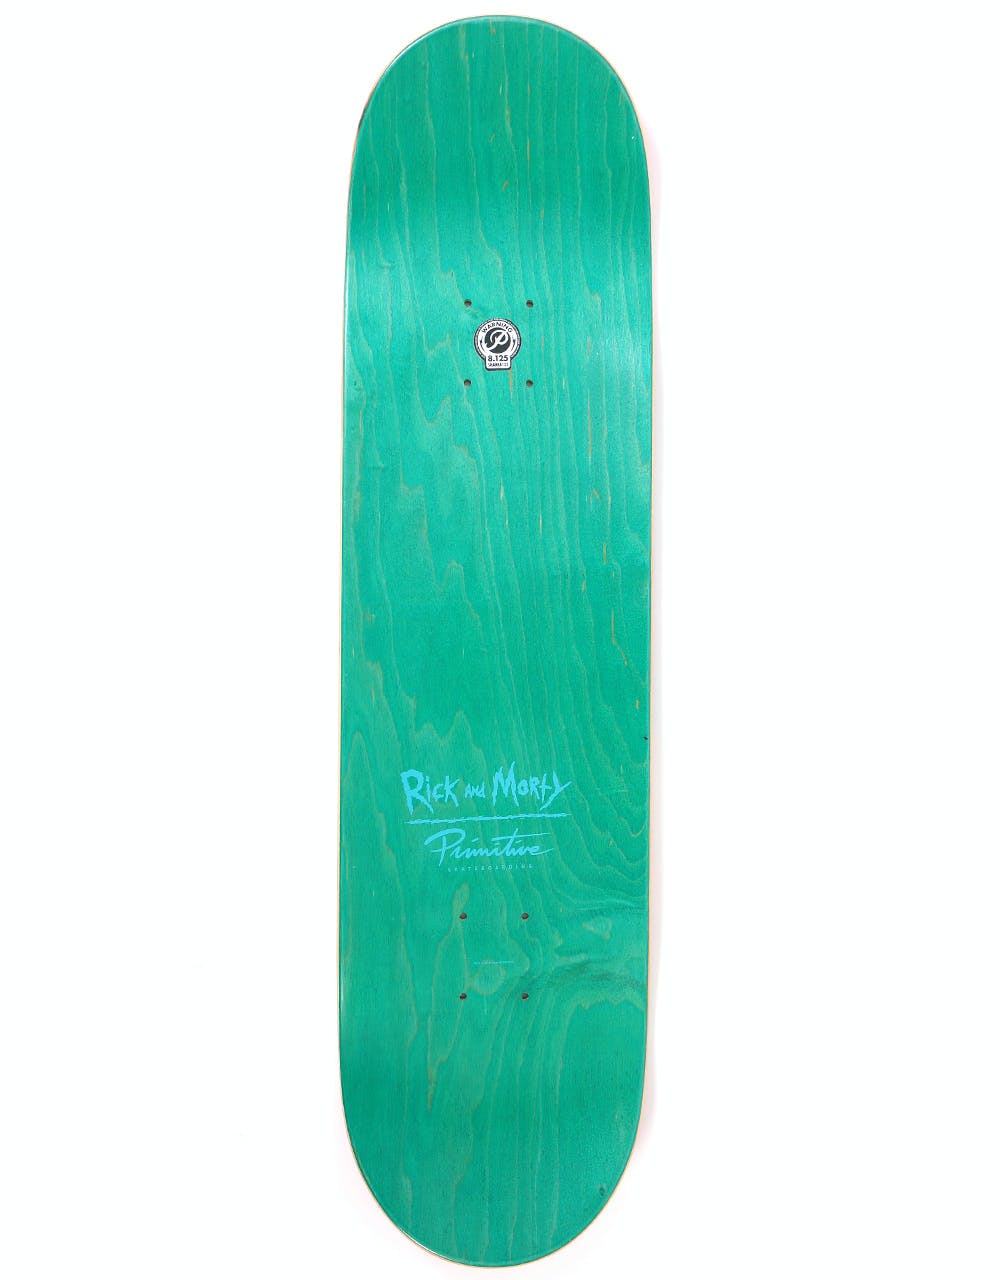 Primitive x Rick & Morty Gwendolyn Skateboard Deck - 8.125"